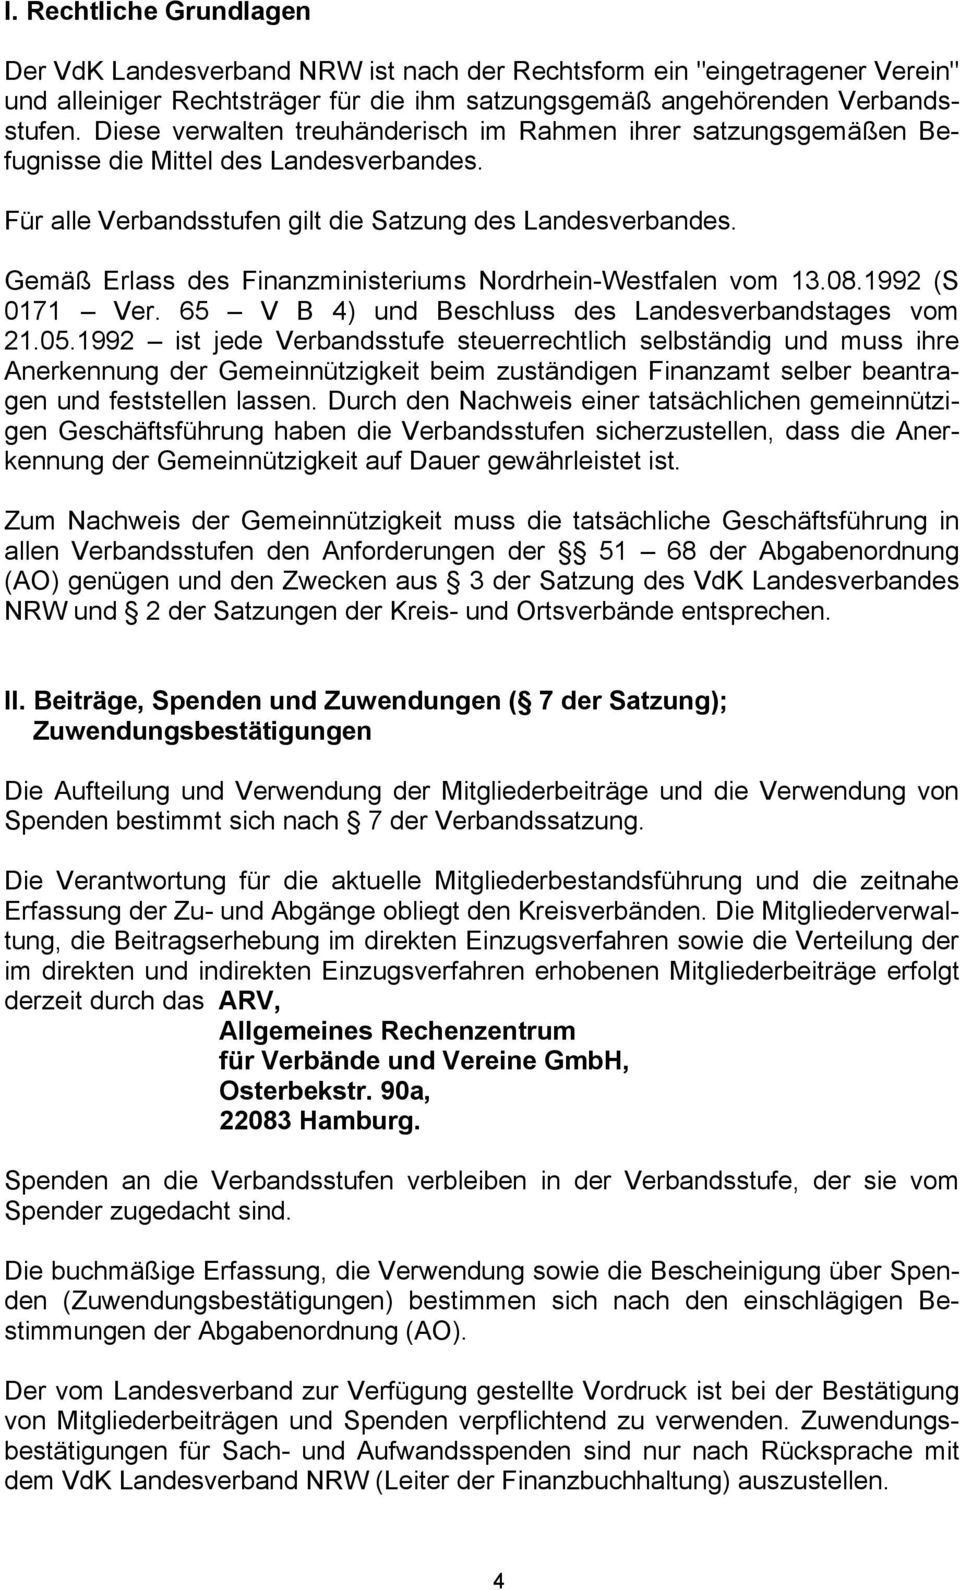 Gemäß Erlass des Finanzministeriums Nordrhein-Westfalen vom 13.08.1992 (S 0171 Ver. 65 V B 4) und Beschluss des Landesverbandstages vom 21.05.